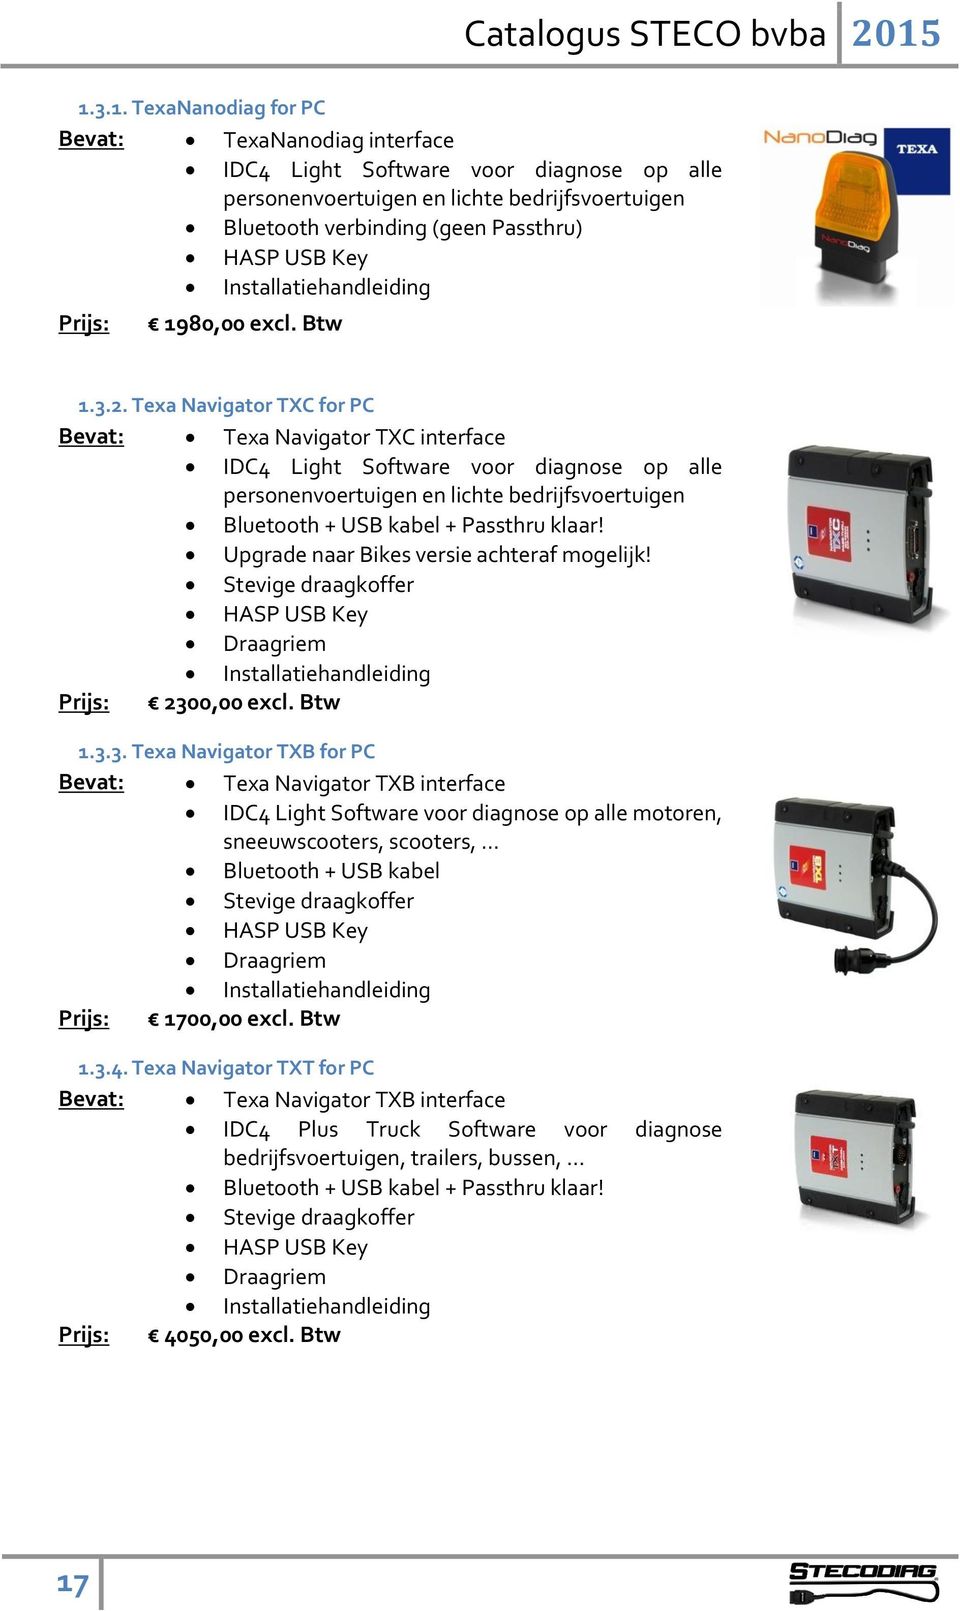 Texa Navigator TXC for PC Bevat: Texa Navigator TXC interface IDC4 Light Software voor diagnose op alle personenvoertuigen en lichte bedrijfsvoertuigen Bluetooth + USB kabel + Passthru klaar!